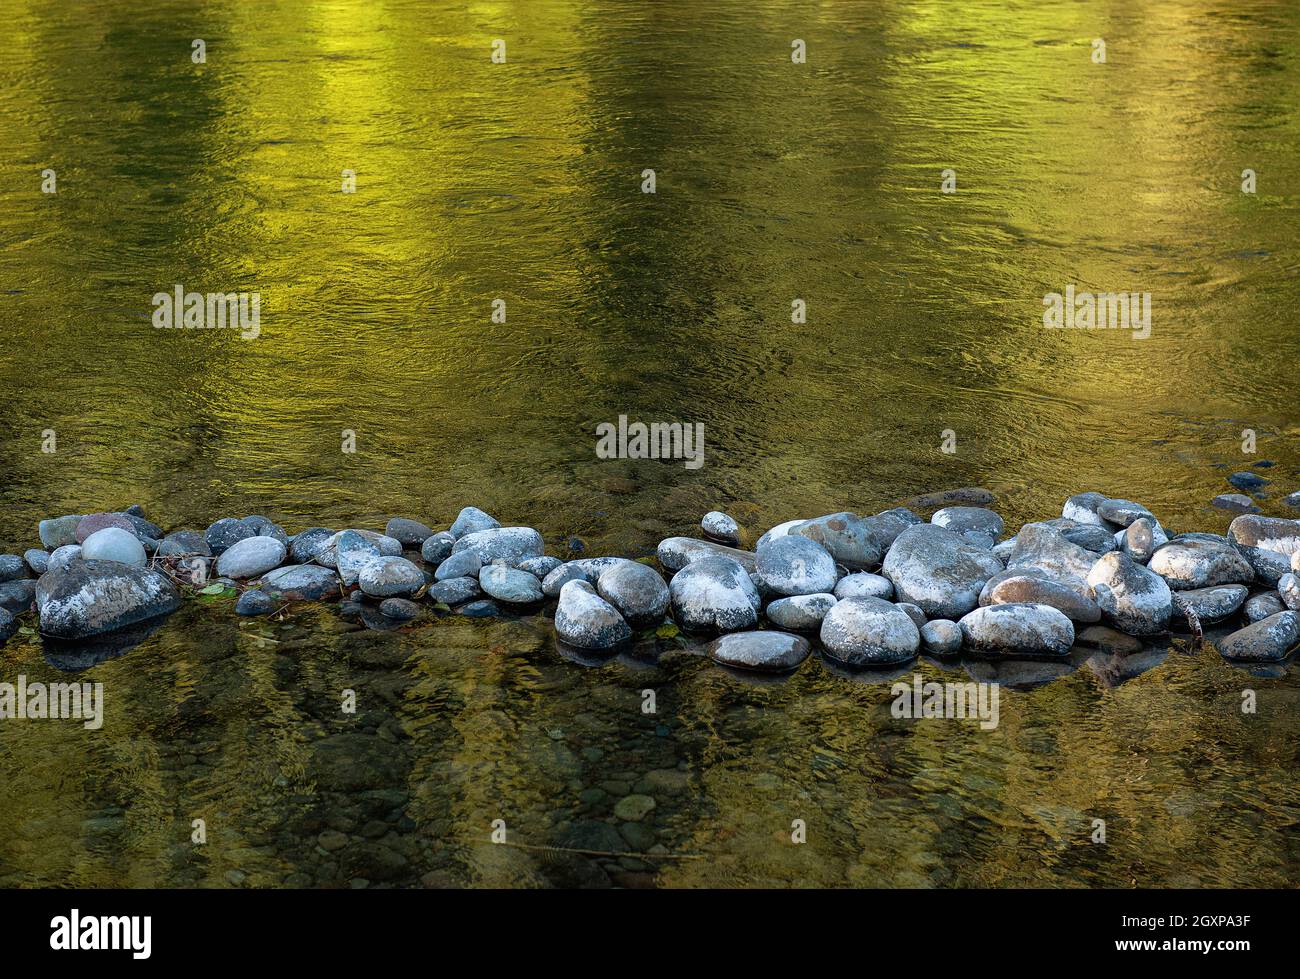 The North Santiam River, Oregon. Stock Photo